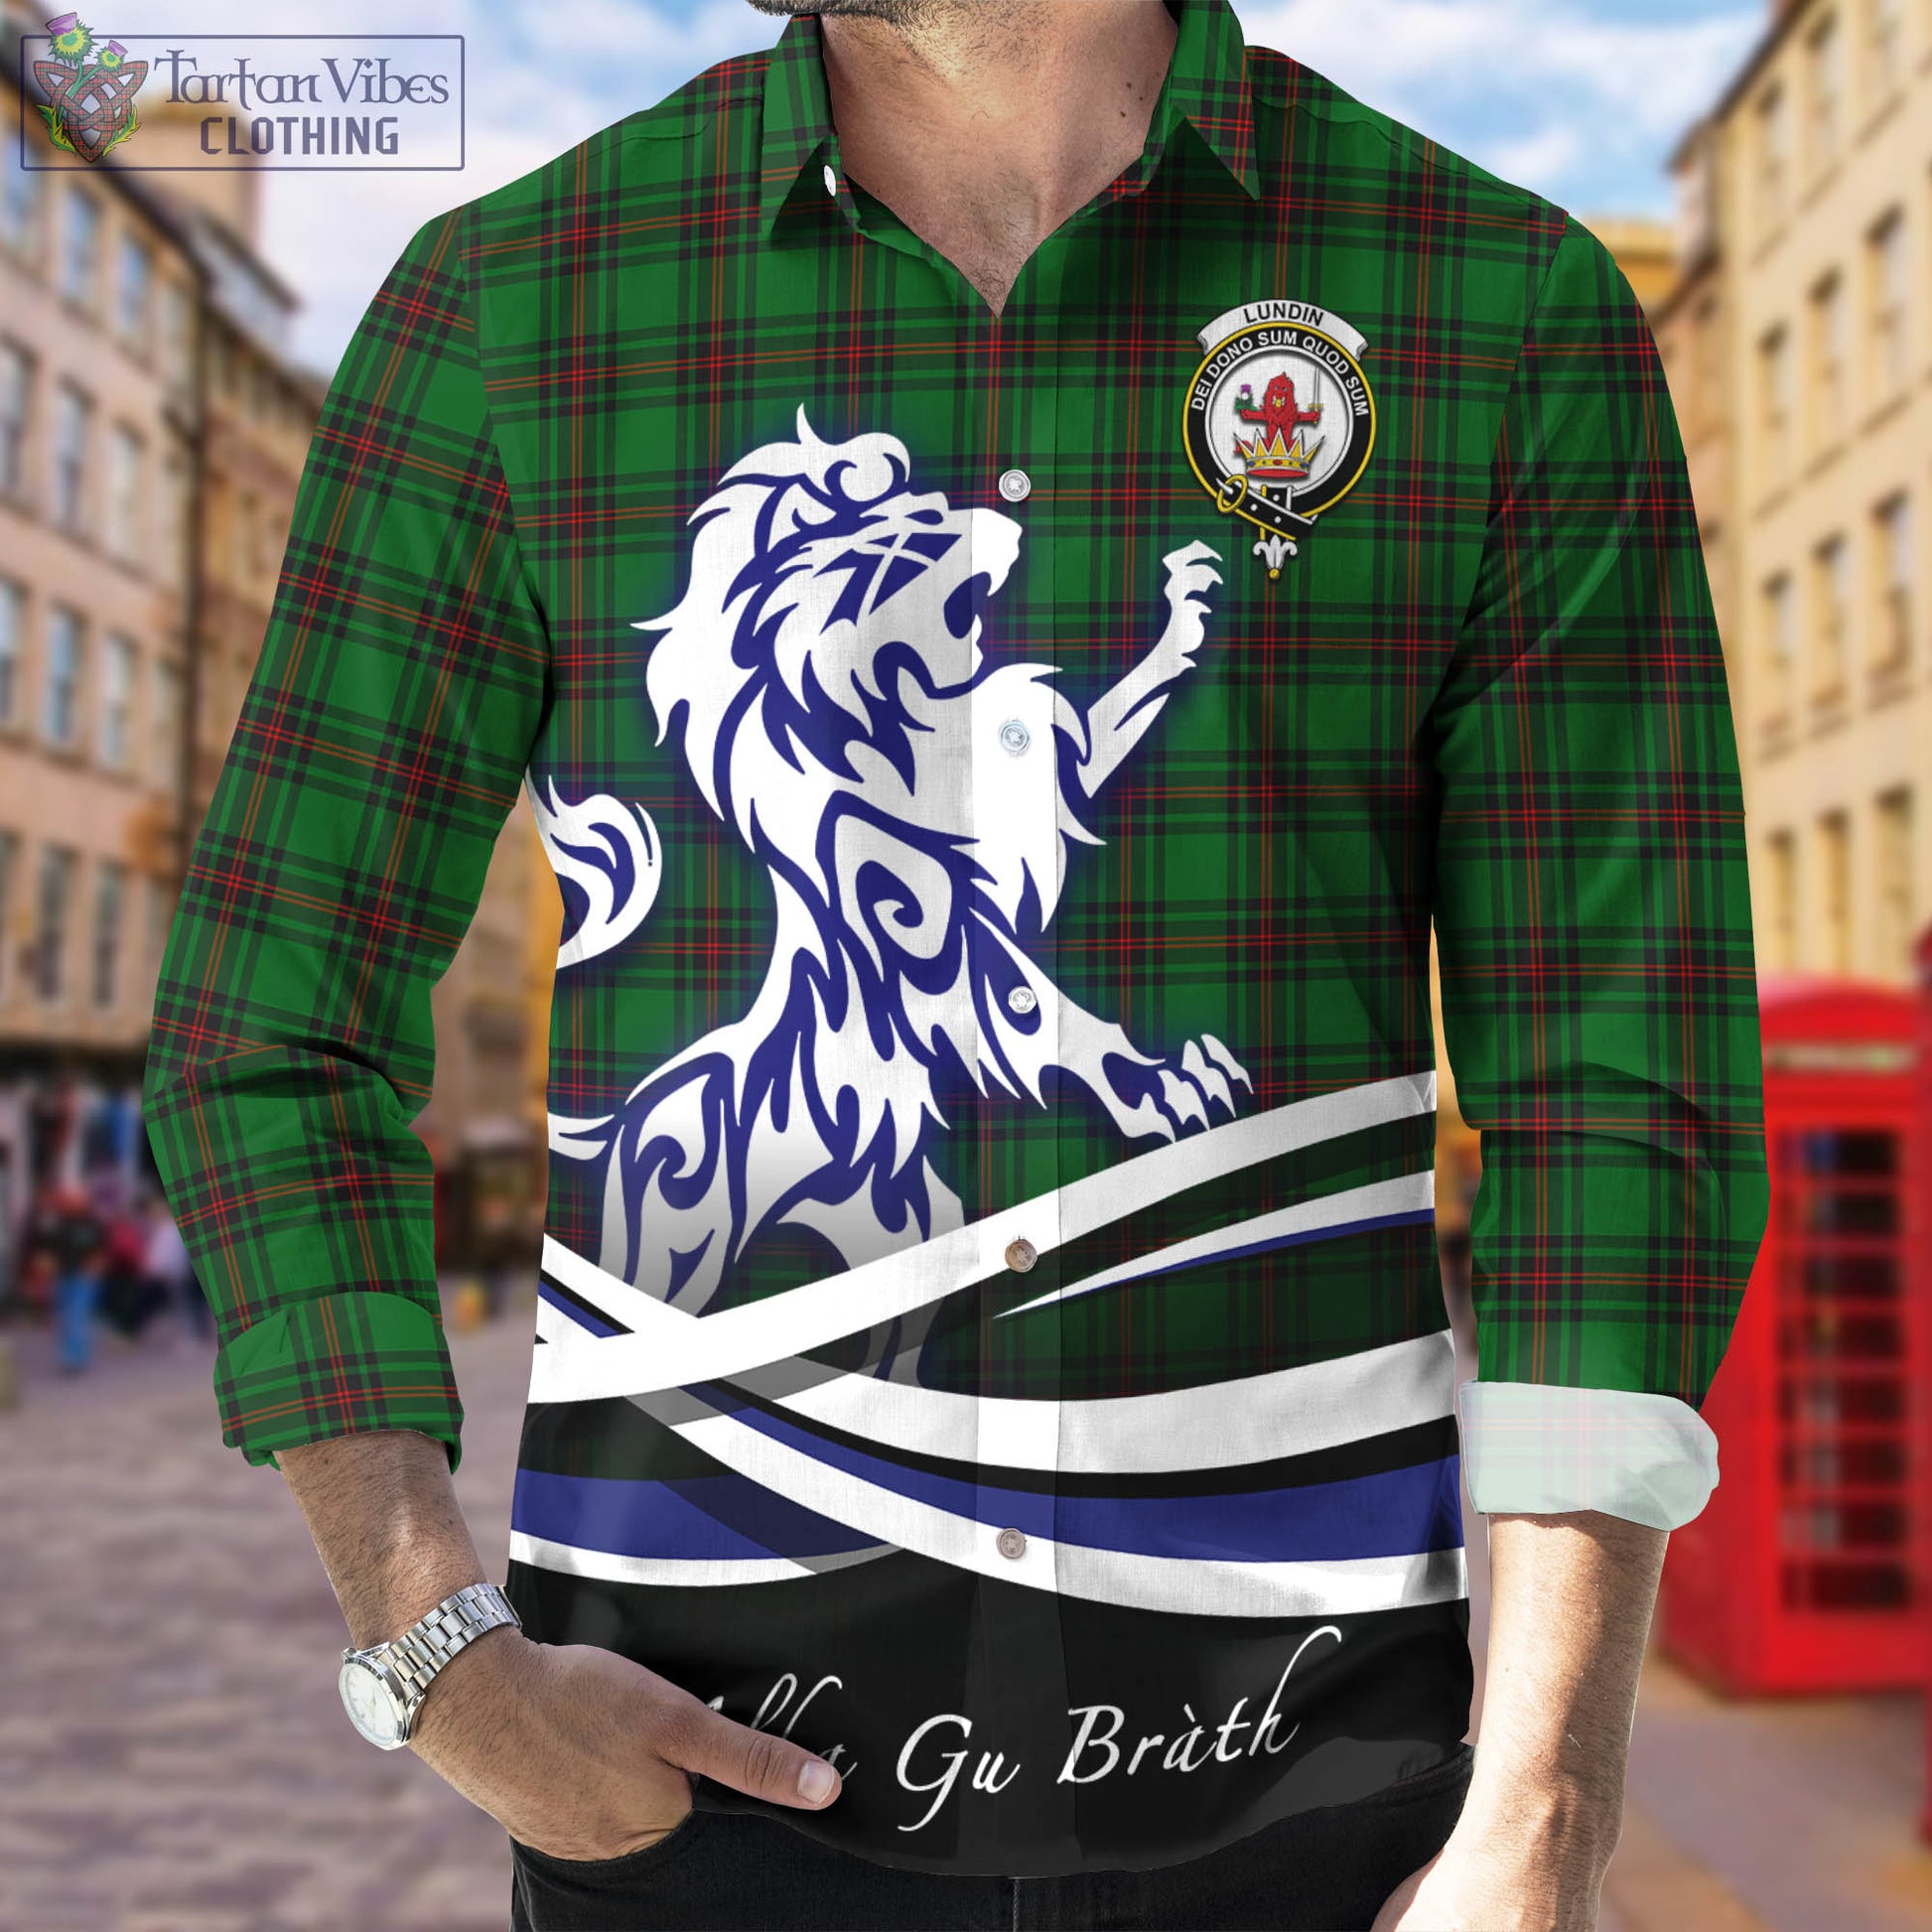 lundin-tartan-long-sleeve-button-up-shirt-with-alba-gu-brath-regal-lion-emblem